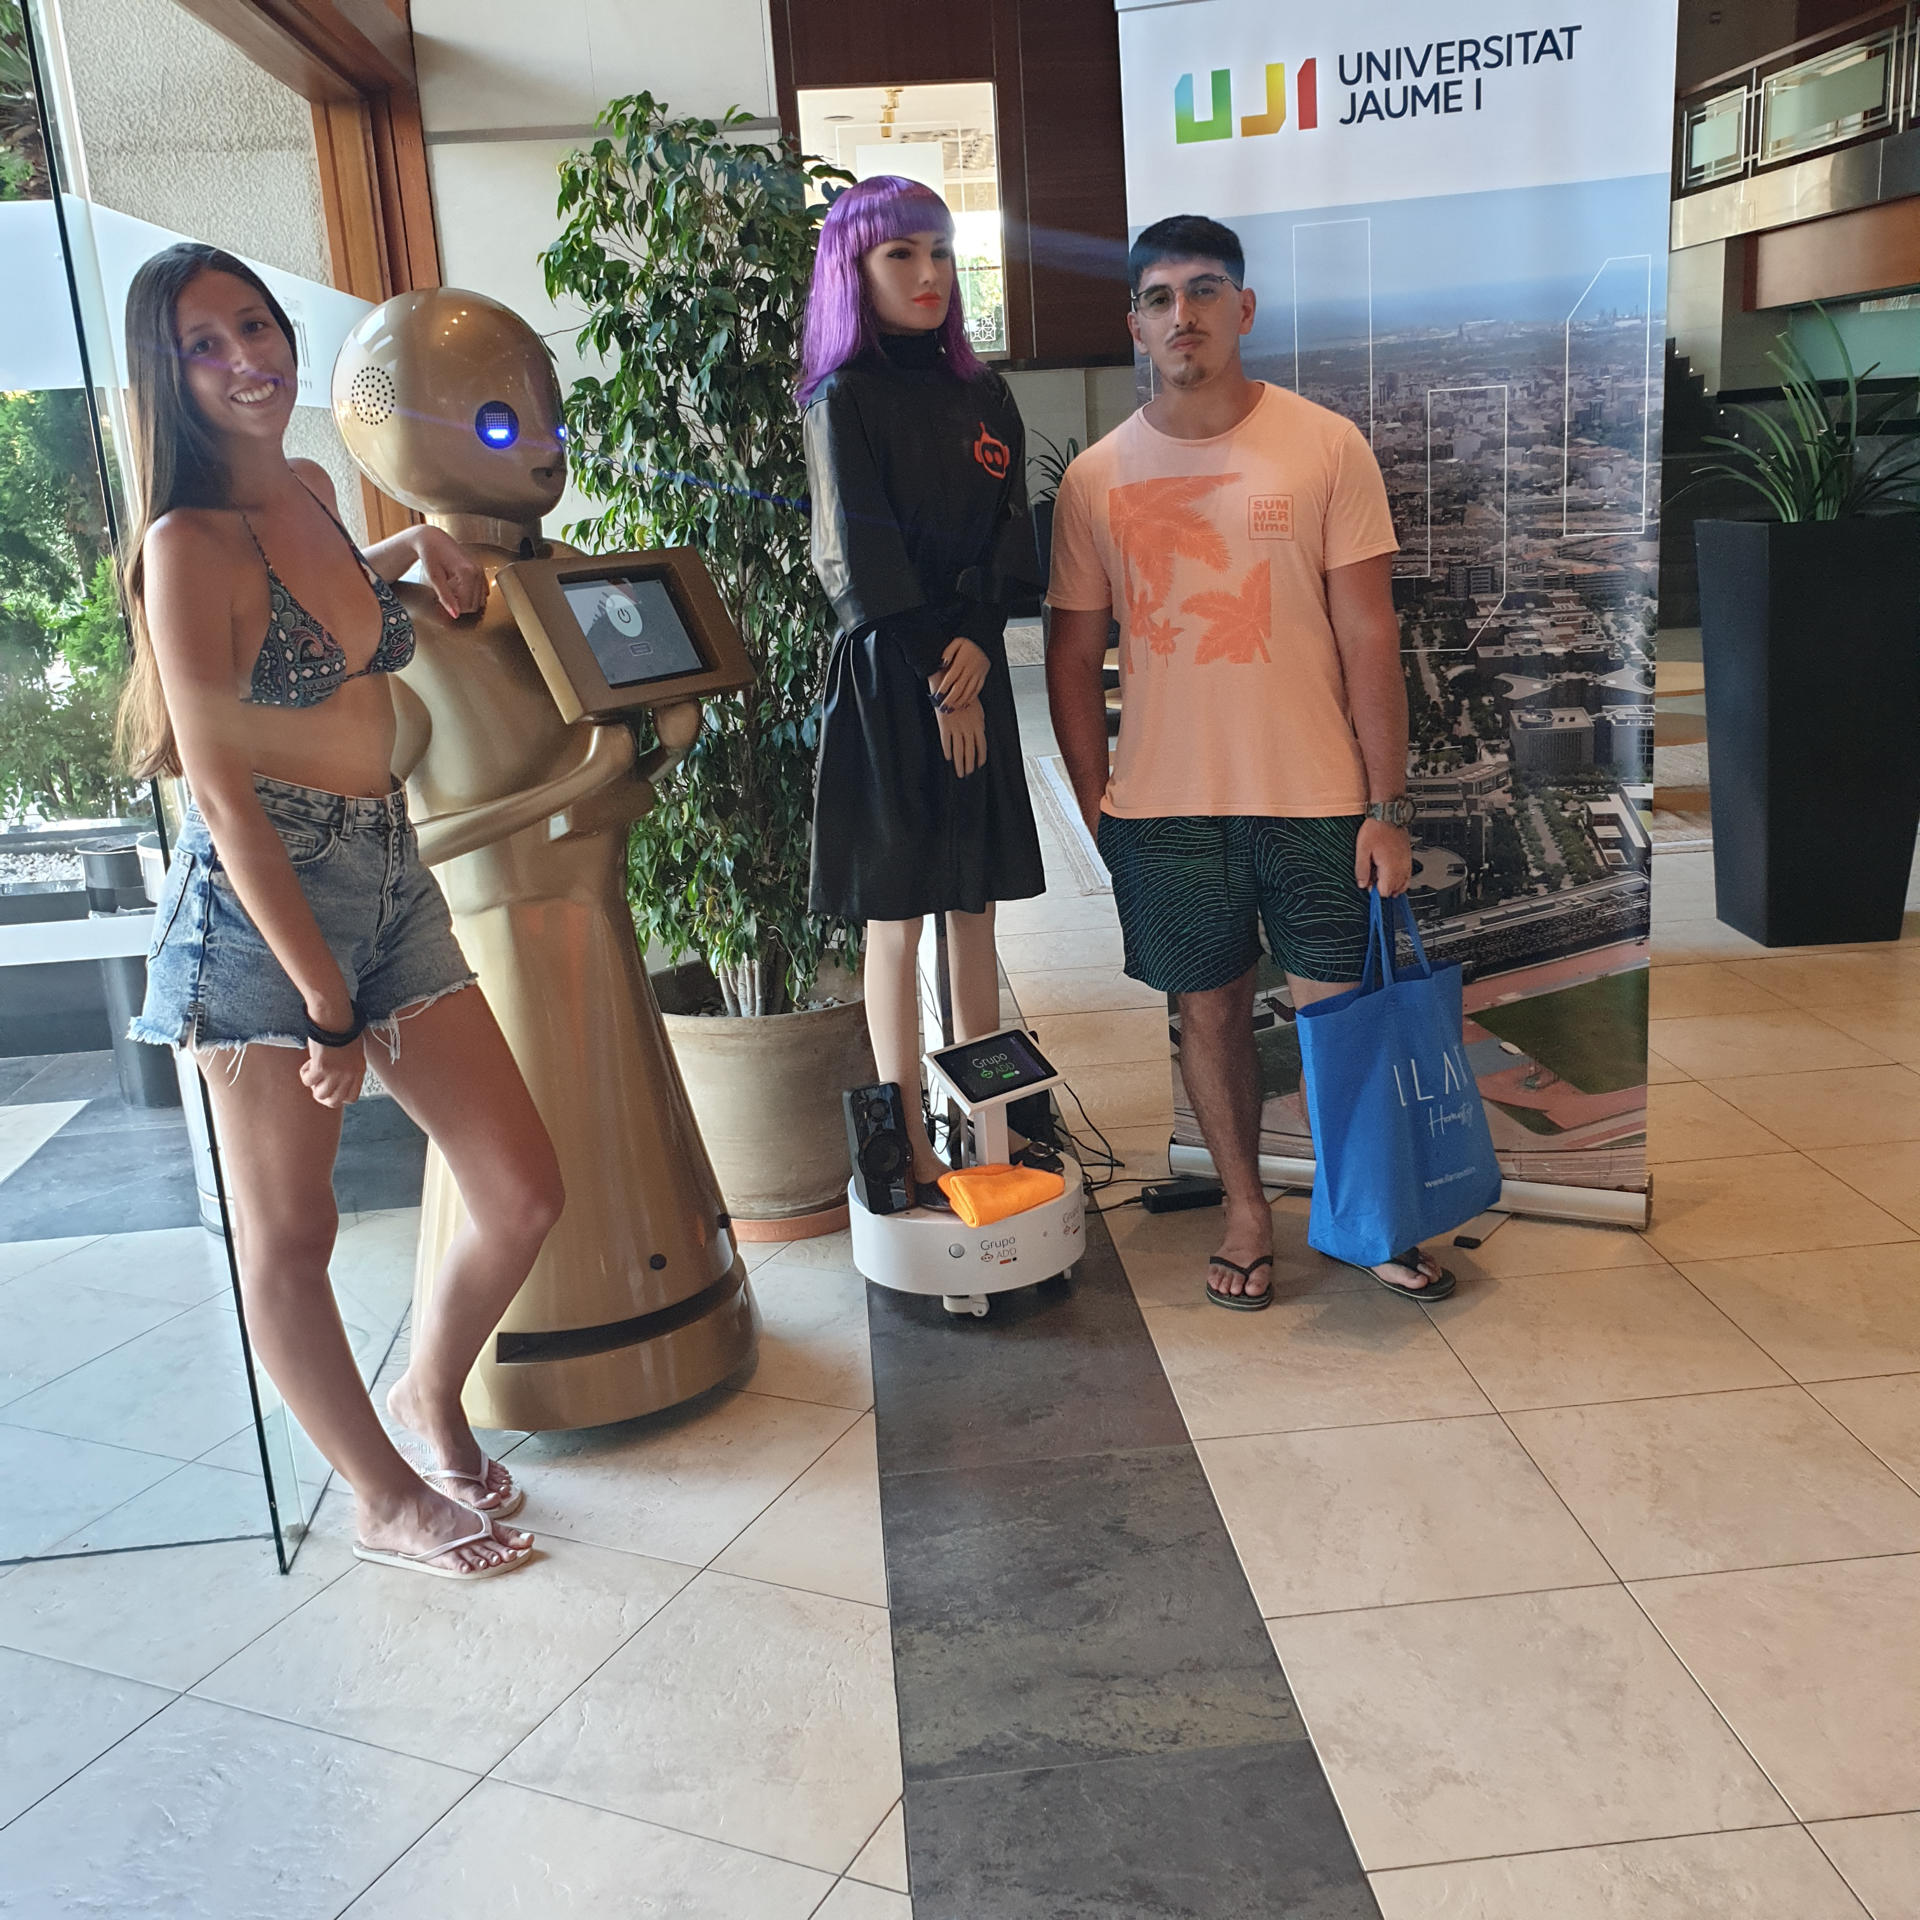 Imagen de los robots junto a dos jóvenes facilitada por la universidad.